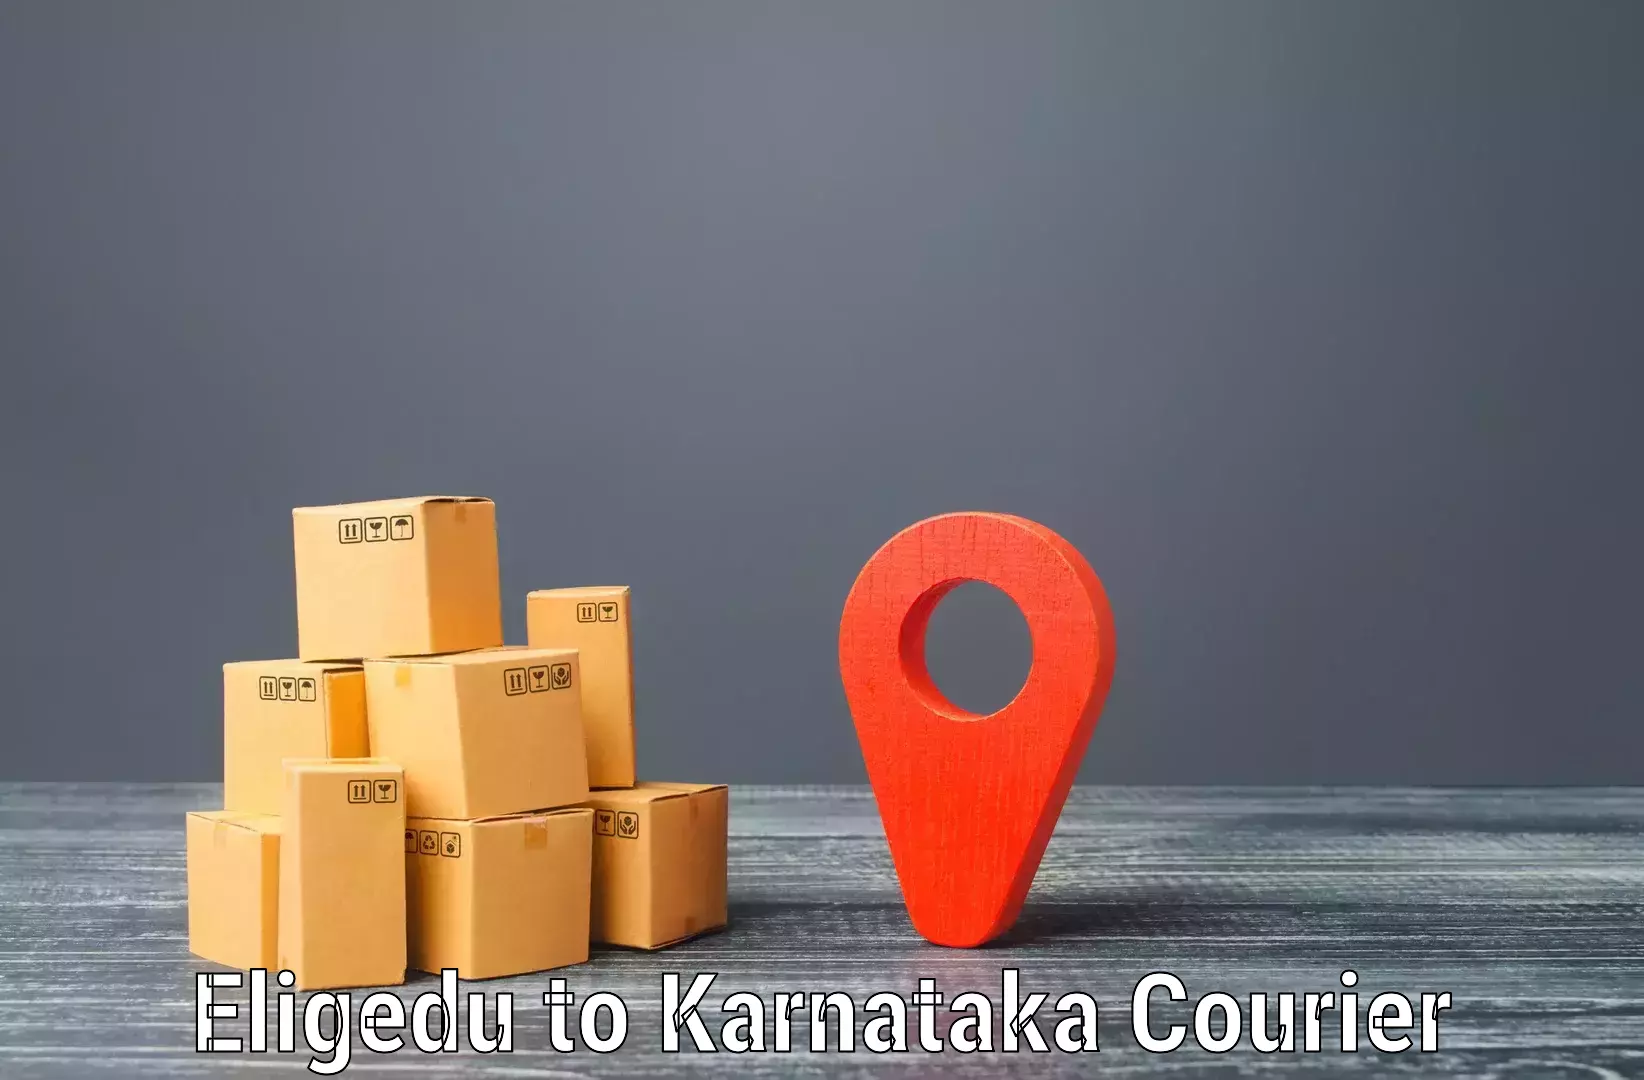 Large-scale shipping solutions Eligedu to Kalaburagi